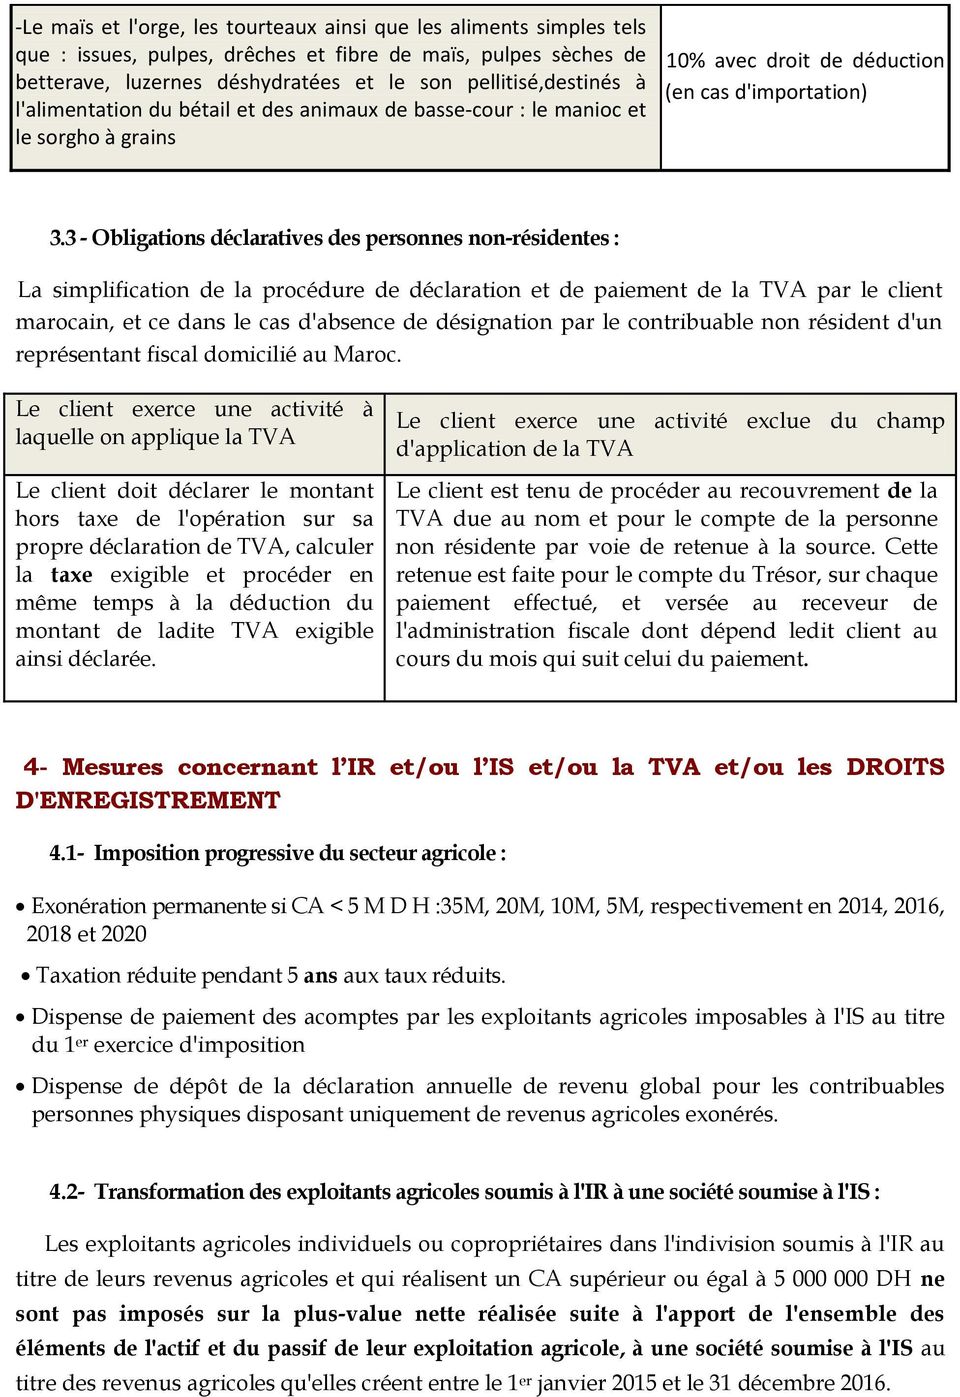 3 - Obligations déclaratives des personnes non-résidentes : La simplification de la procédure de déclaration et de paiement de la TVA par le client marocain, et ce dans le cas d'absence de